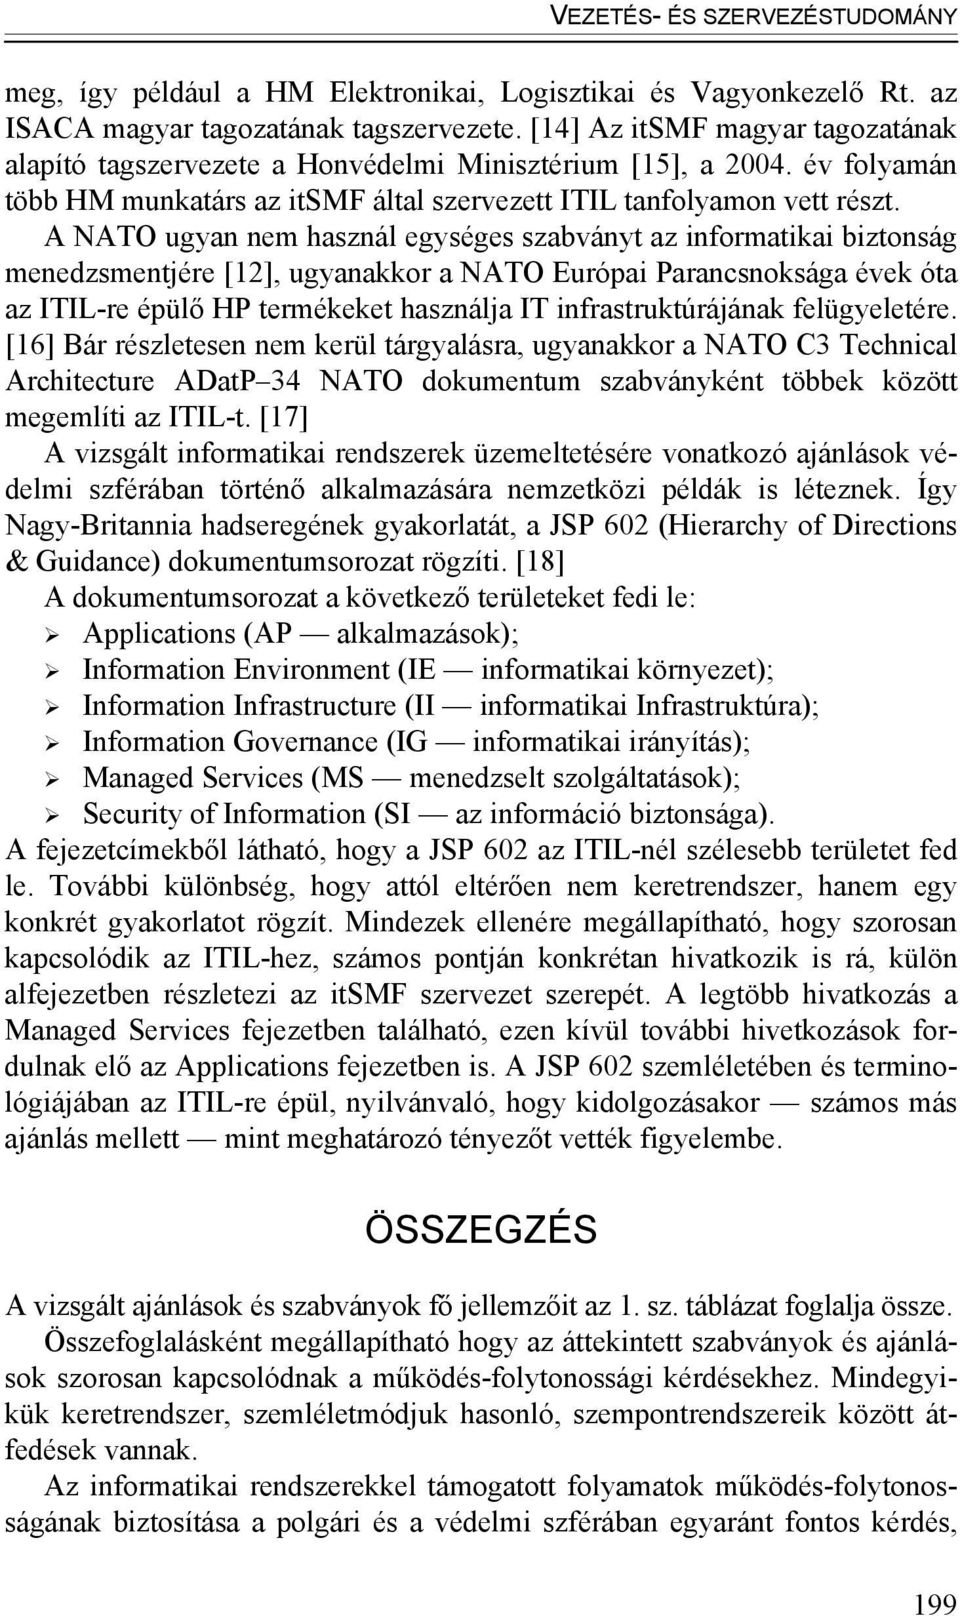 A NATO ugyan nem használ egységes szabványt az informatikai biztonság menedzsmentjére [12], ugyanakkor a NATO Európai Parancsnoksága évek óta az ITIL-re épülő HP termékeket használja IT